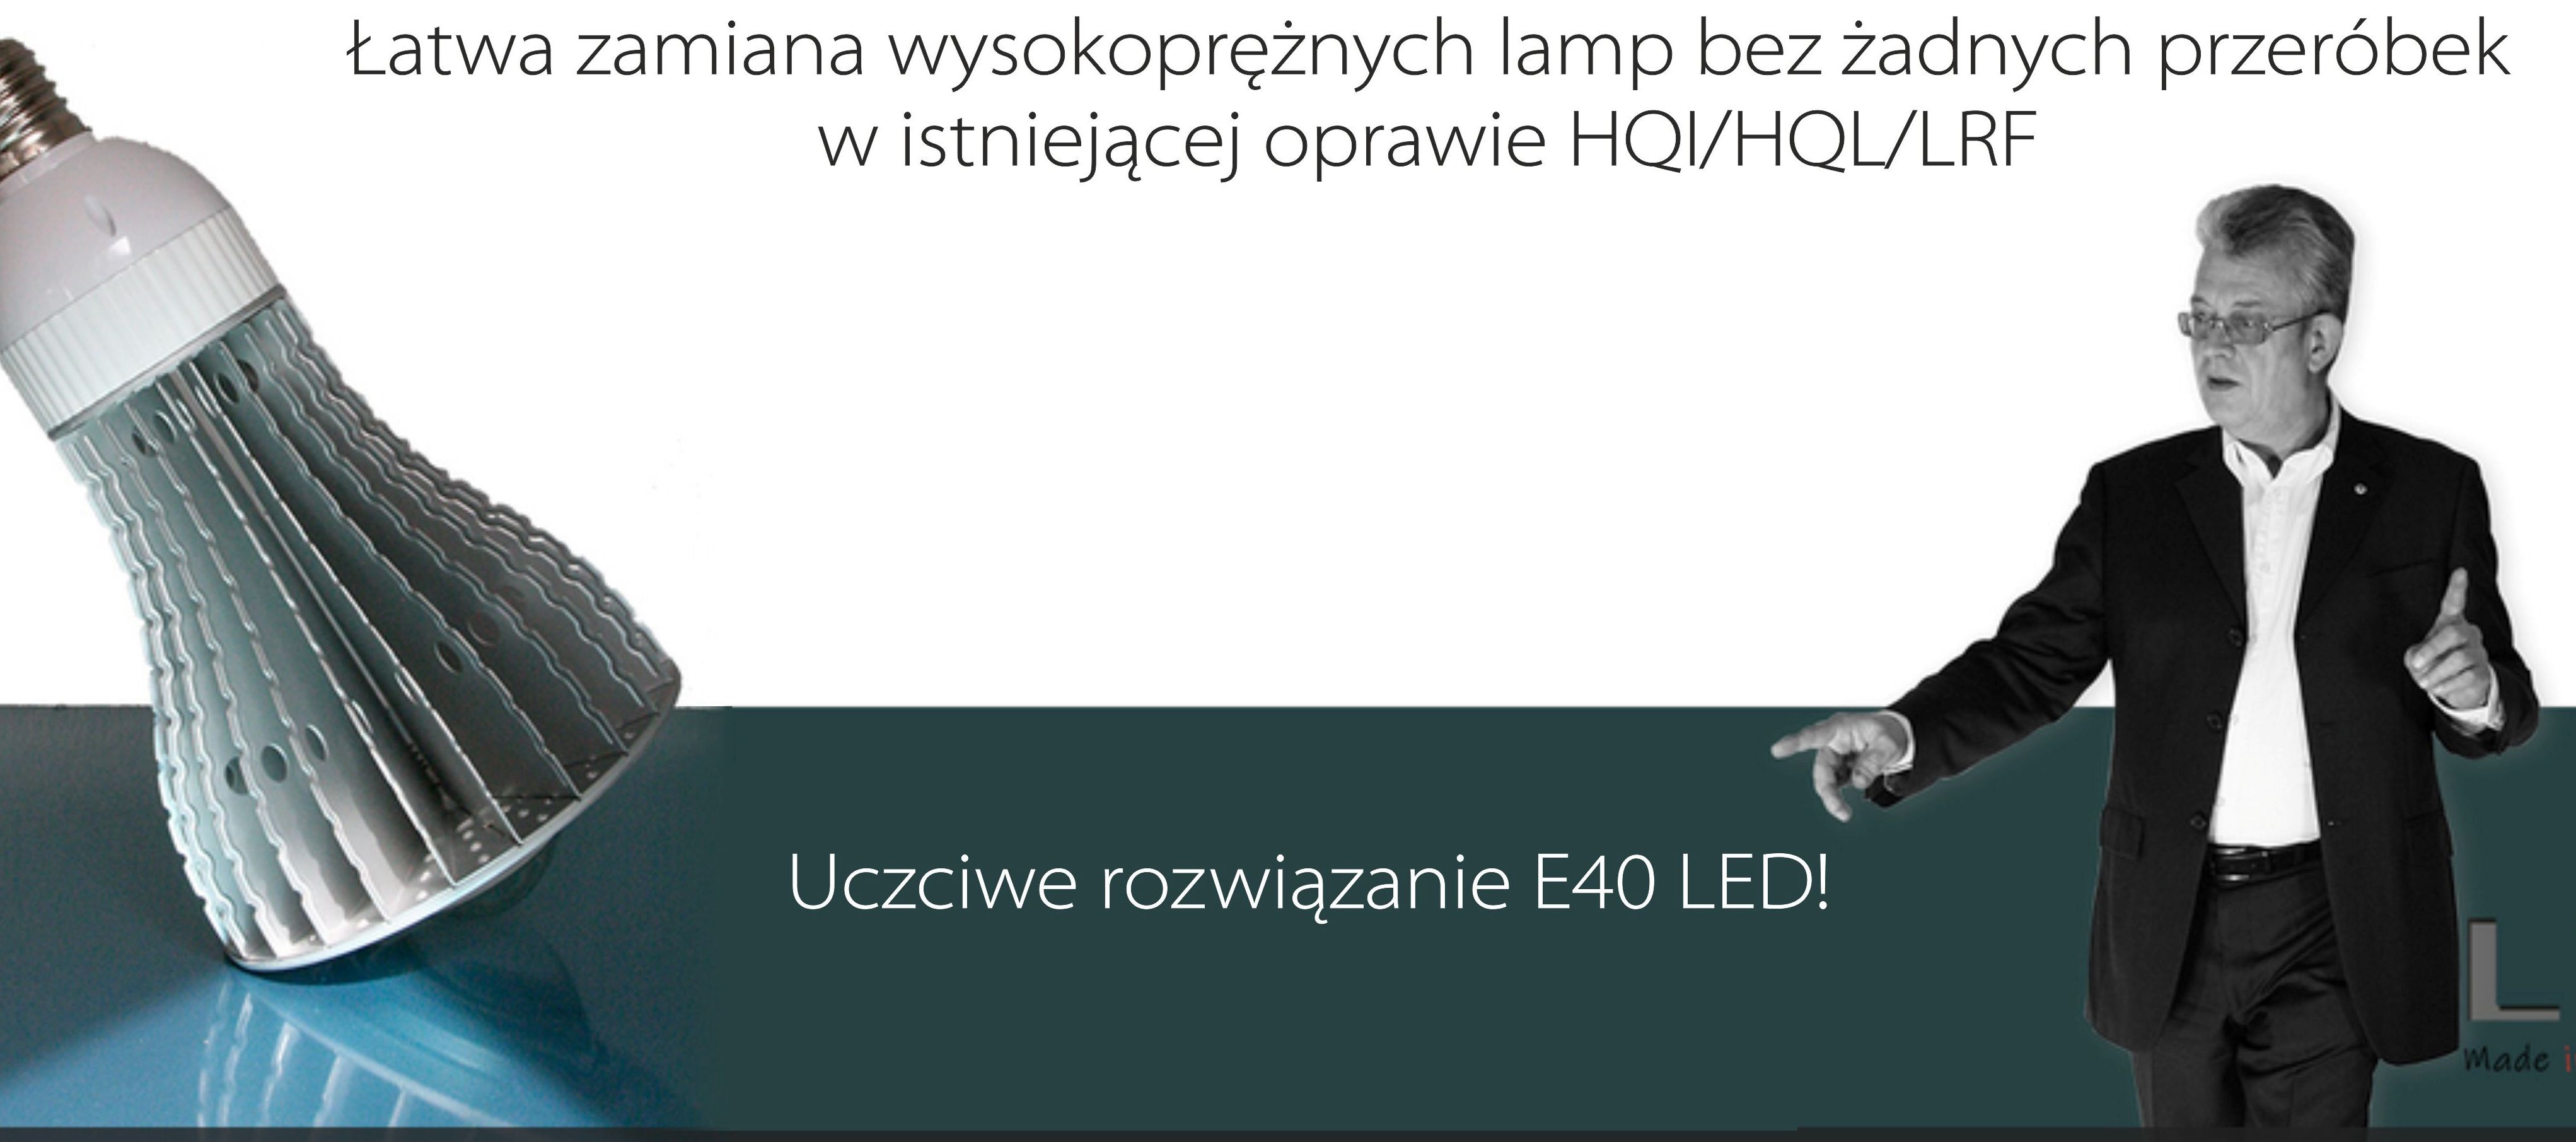 FAQ E40 LED PREMIO,żarówki LED E40, lampy E40LEDHQI, LEDy za żarówki rtęciowe E40HQL, LEDE40 za lampy Osram, LED za E40HPI Philips, reflektor przemysłowy LED 100W,żarówka LED Premio 135W, barwa światła 5000K, (CRI) Ra >85, R9=98, oprawy LED klasa wnergetyczna A++, LEDy zamienne za wysokoprężne lampa metalohalogenkowa E40